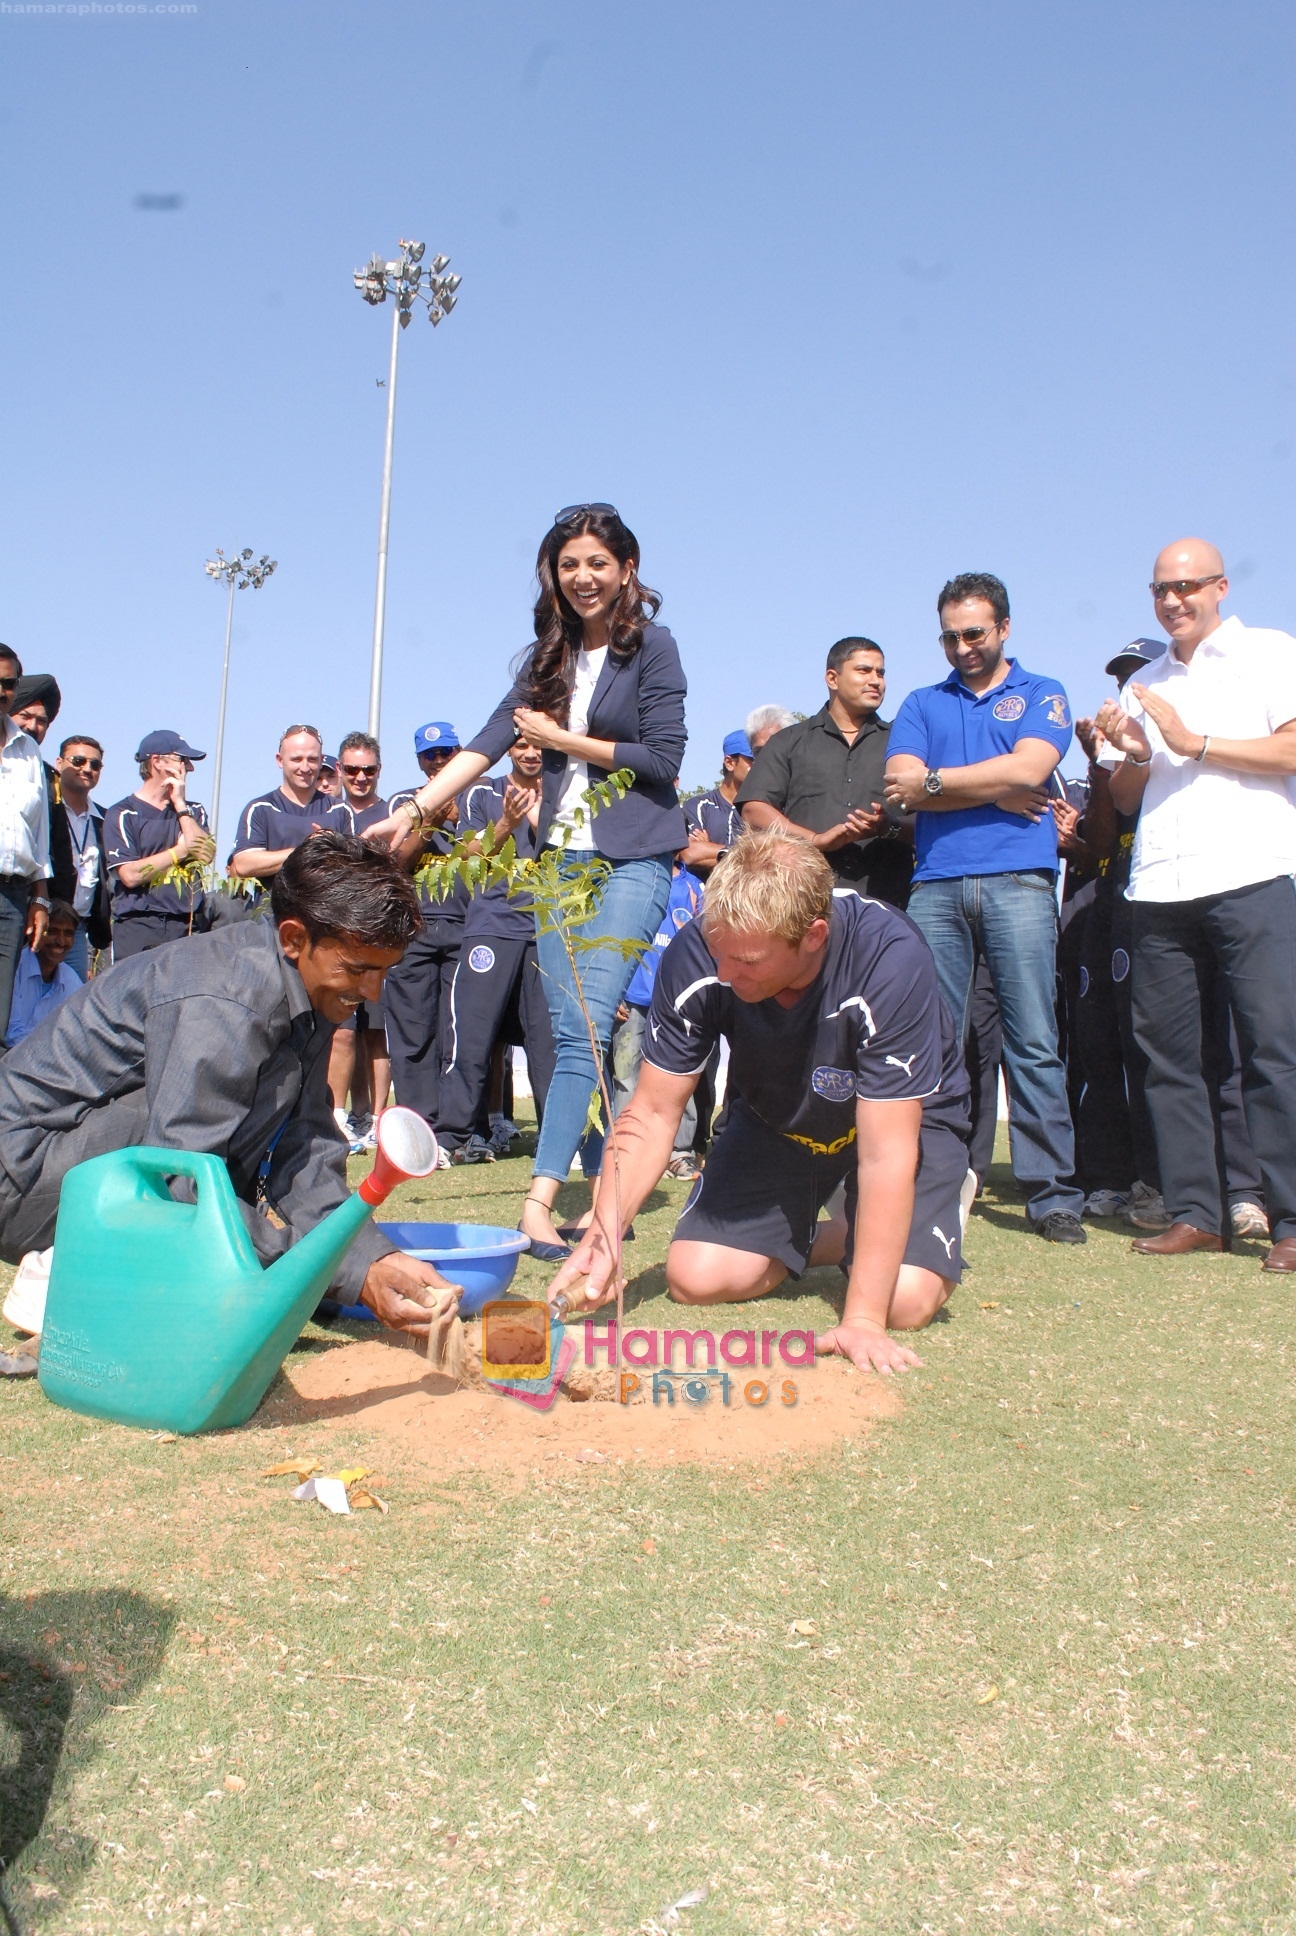 Shilpa Shetty, Raj Kundra, Shane Warne planting a tree at Sawai Mansingh Stadium, Jaipur on 7th March 2010